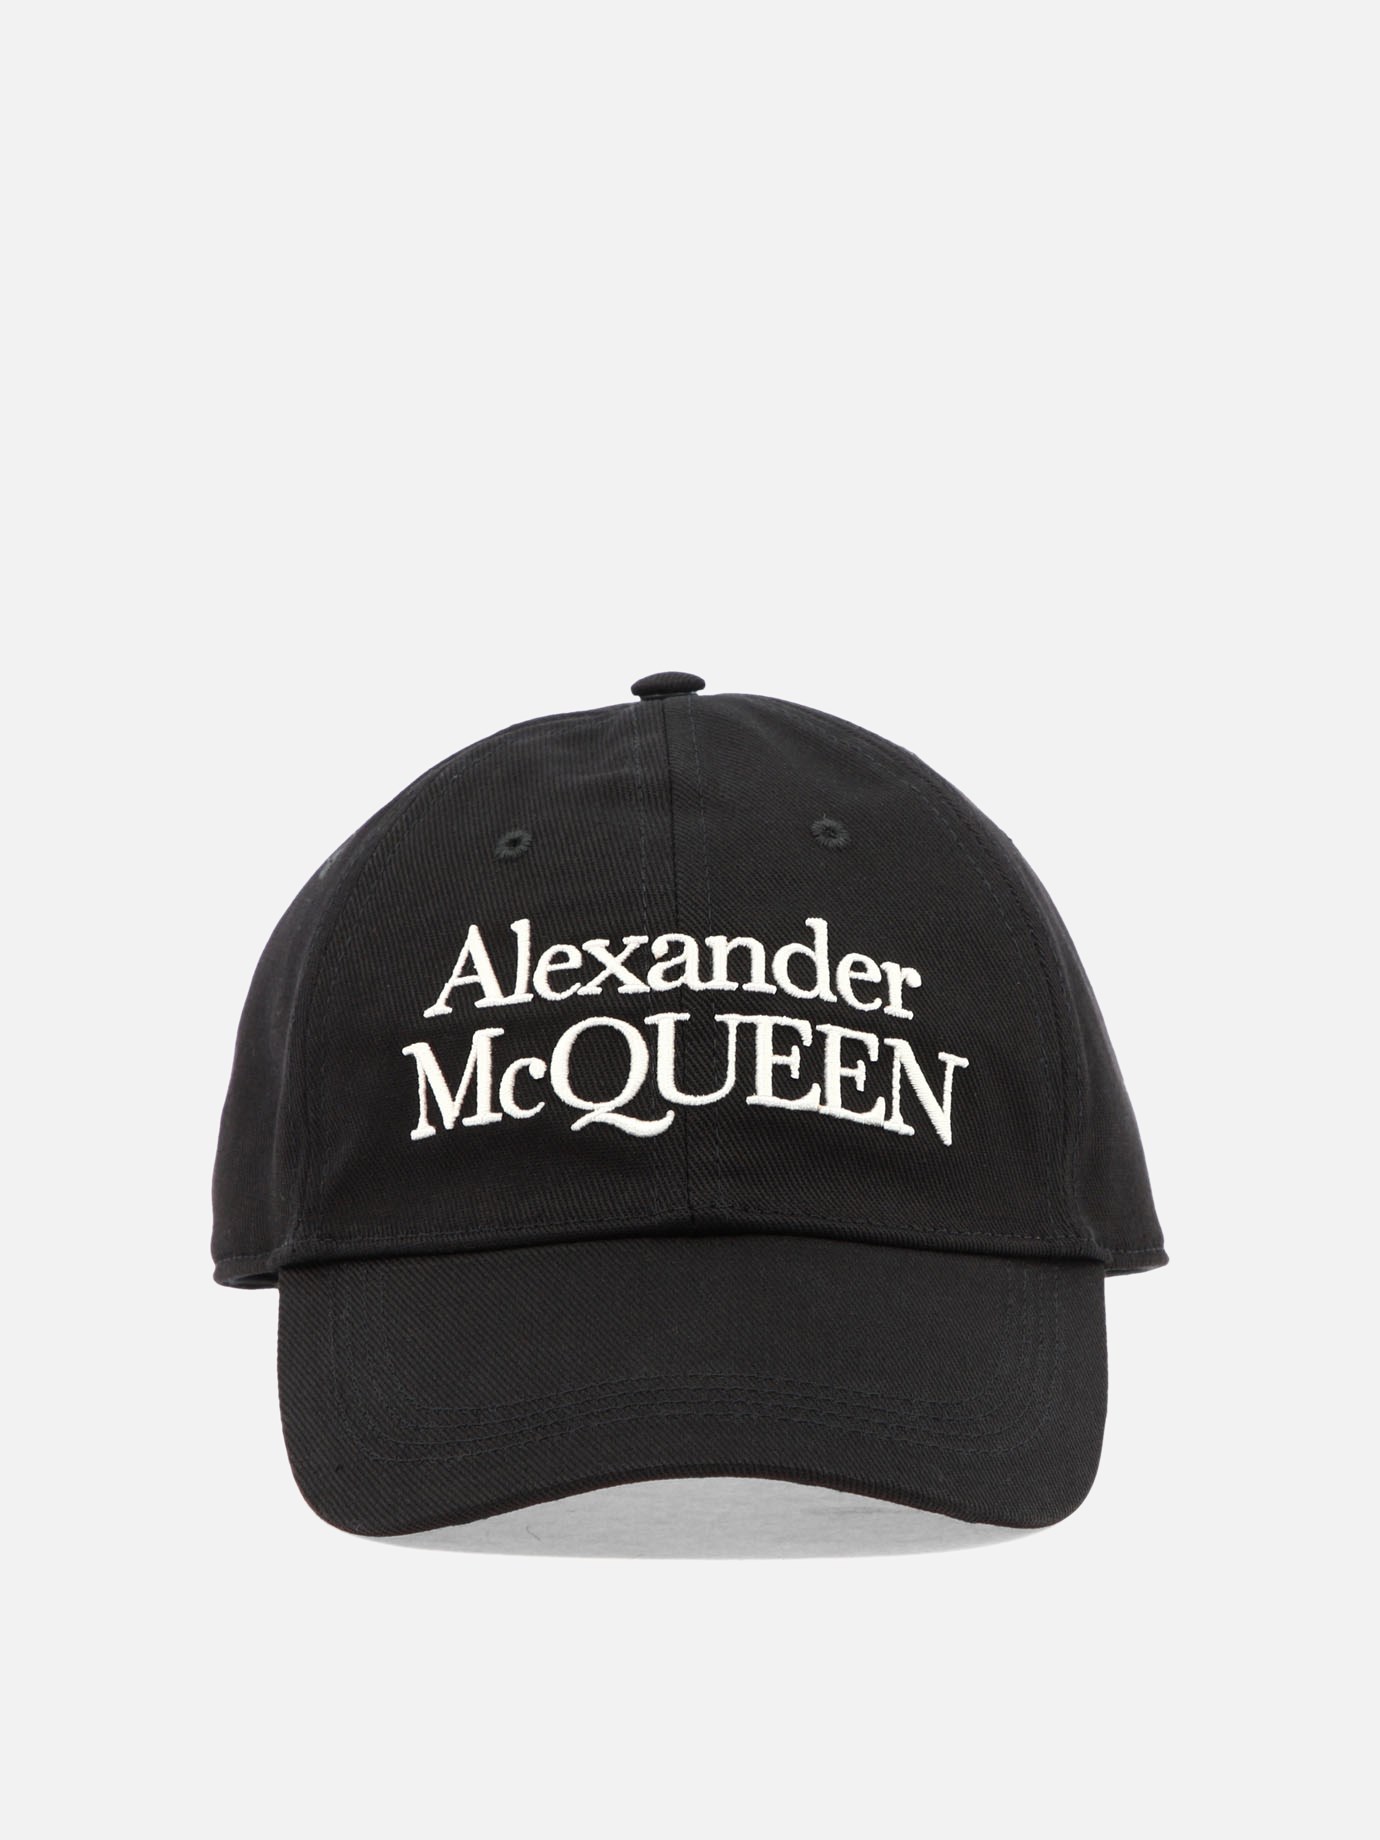  McQueen Signature  capby Alexander McQueen - 2